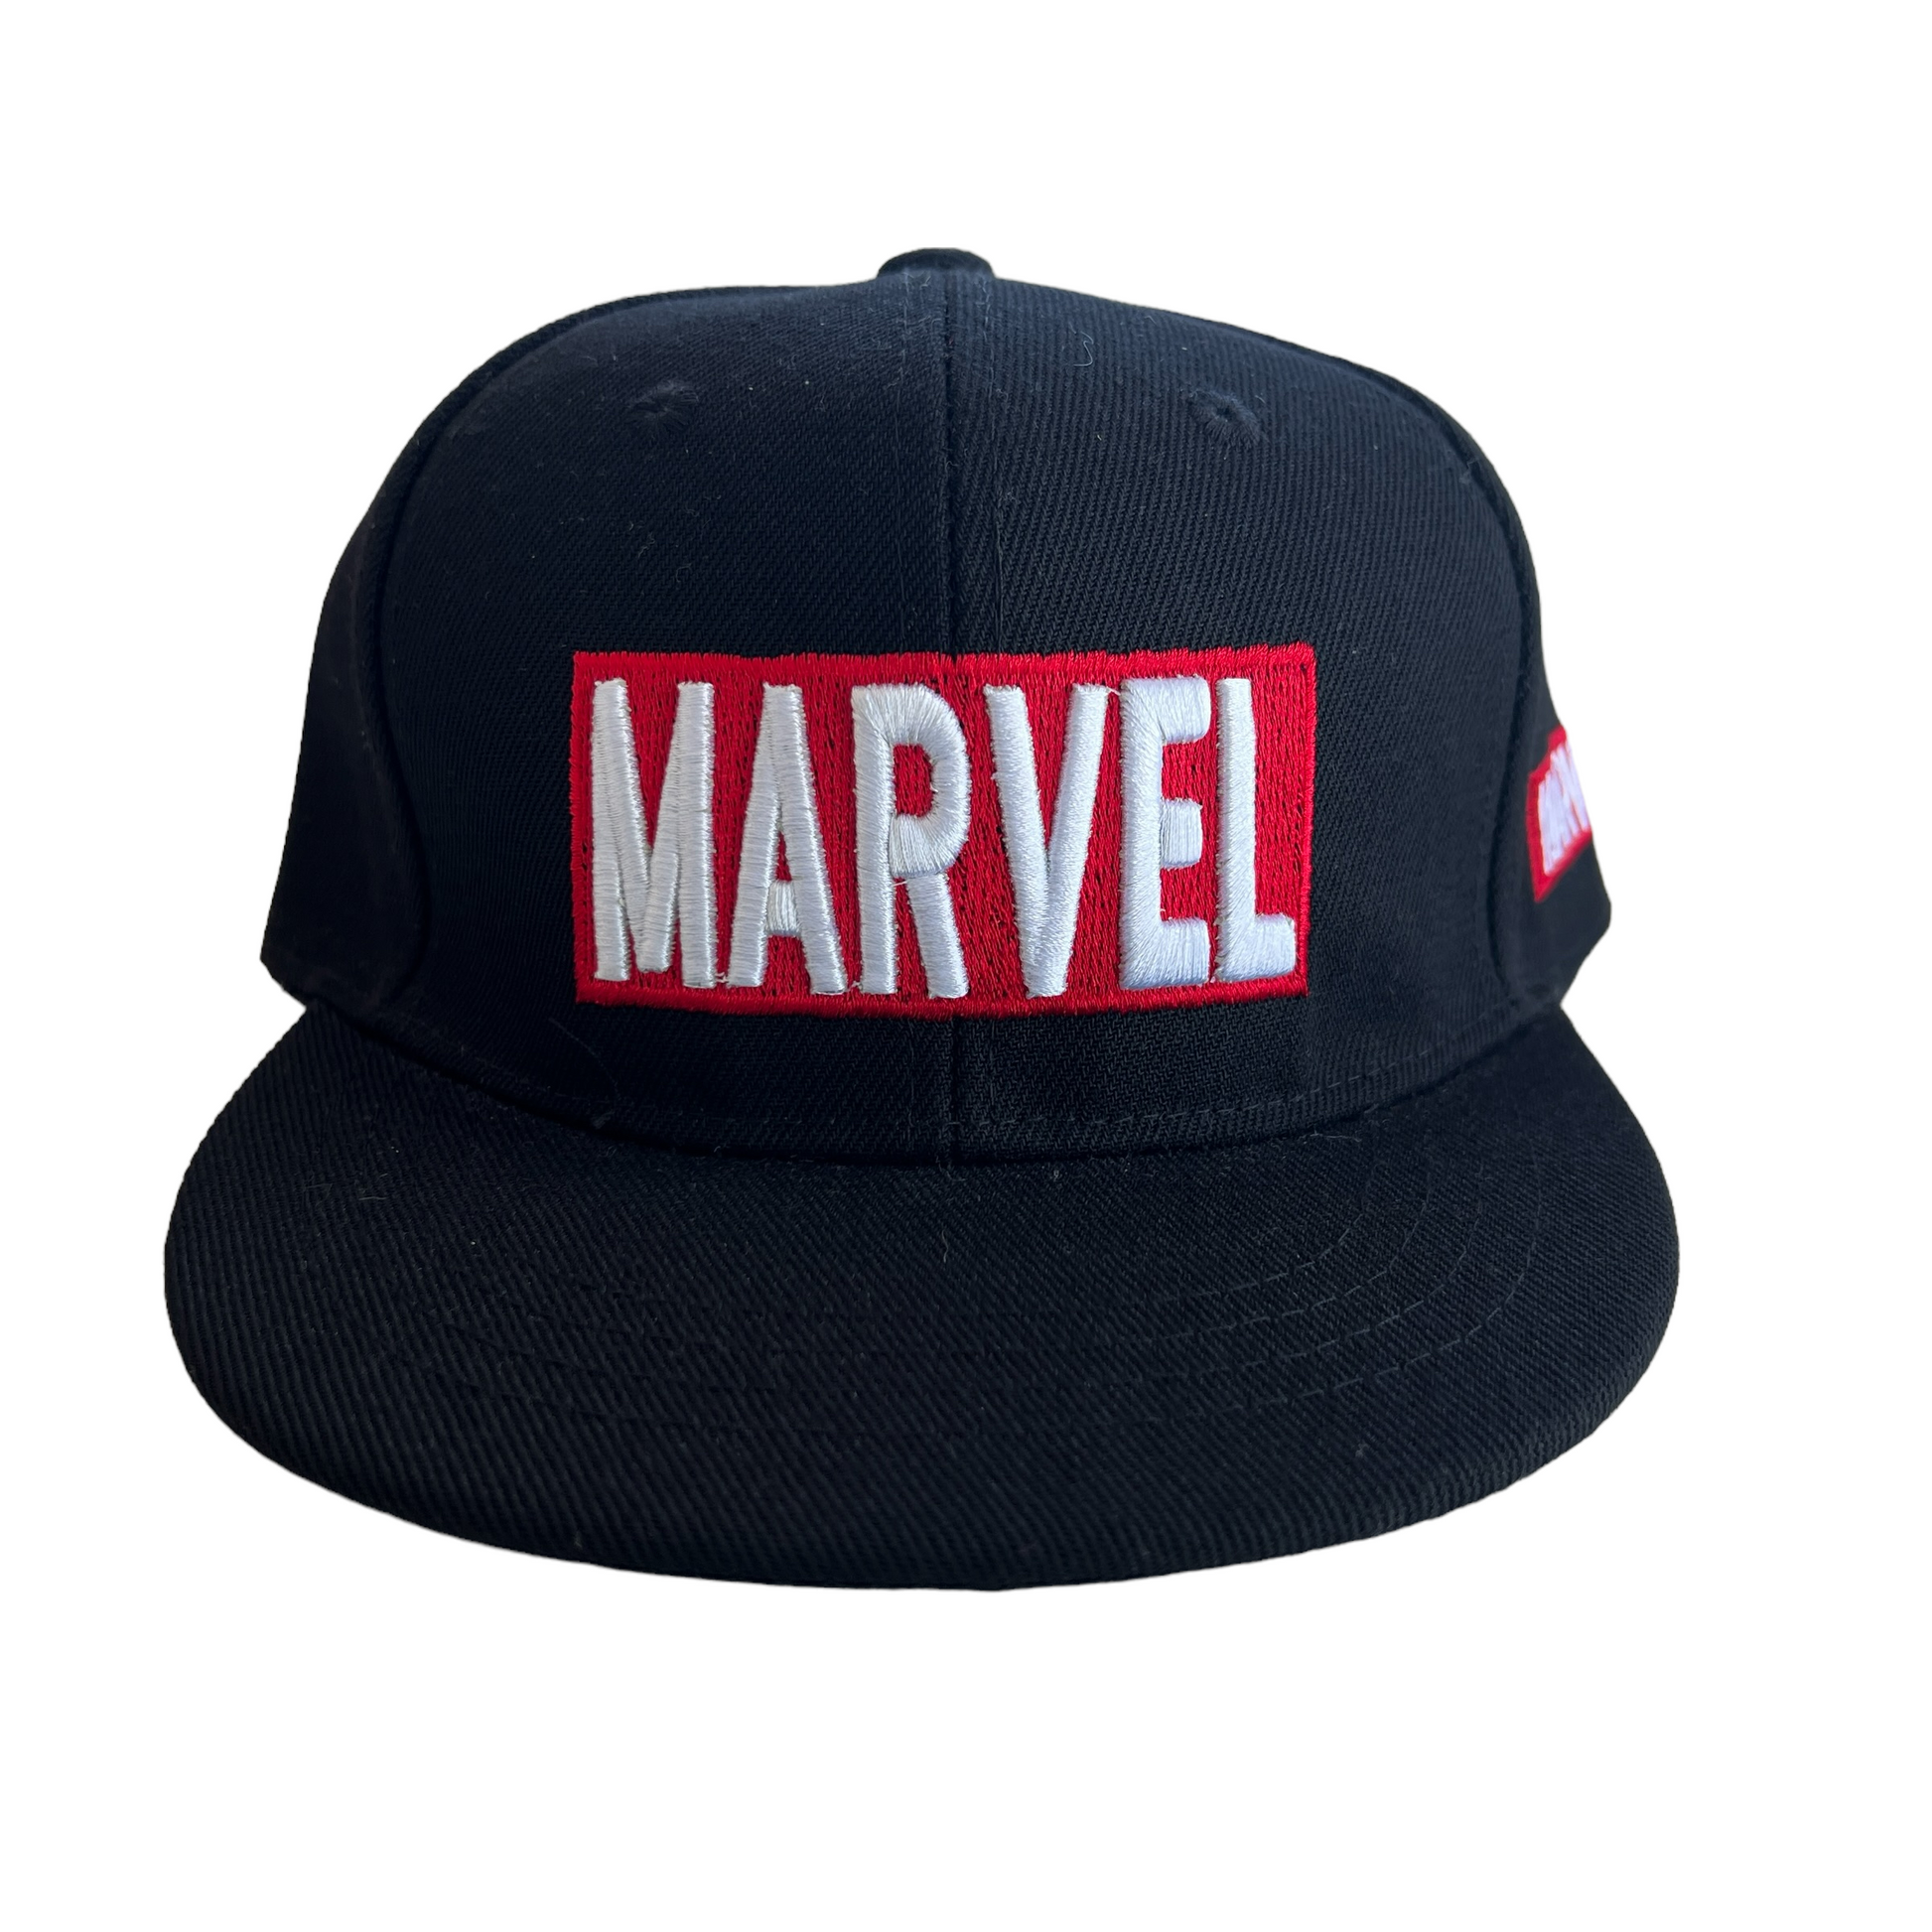 Marvel Series Hats  SPIRIT SPARKPLUGS Black Marvel  